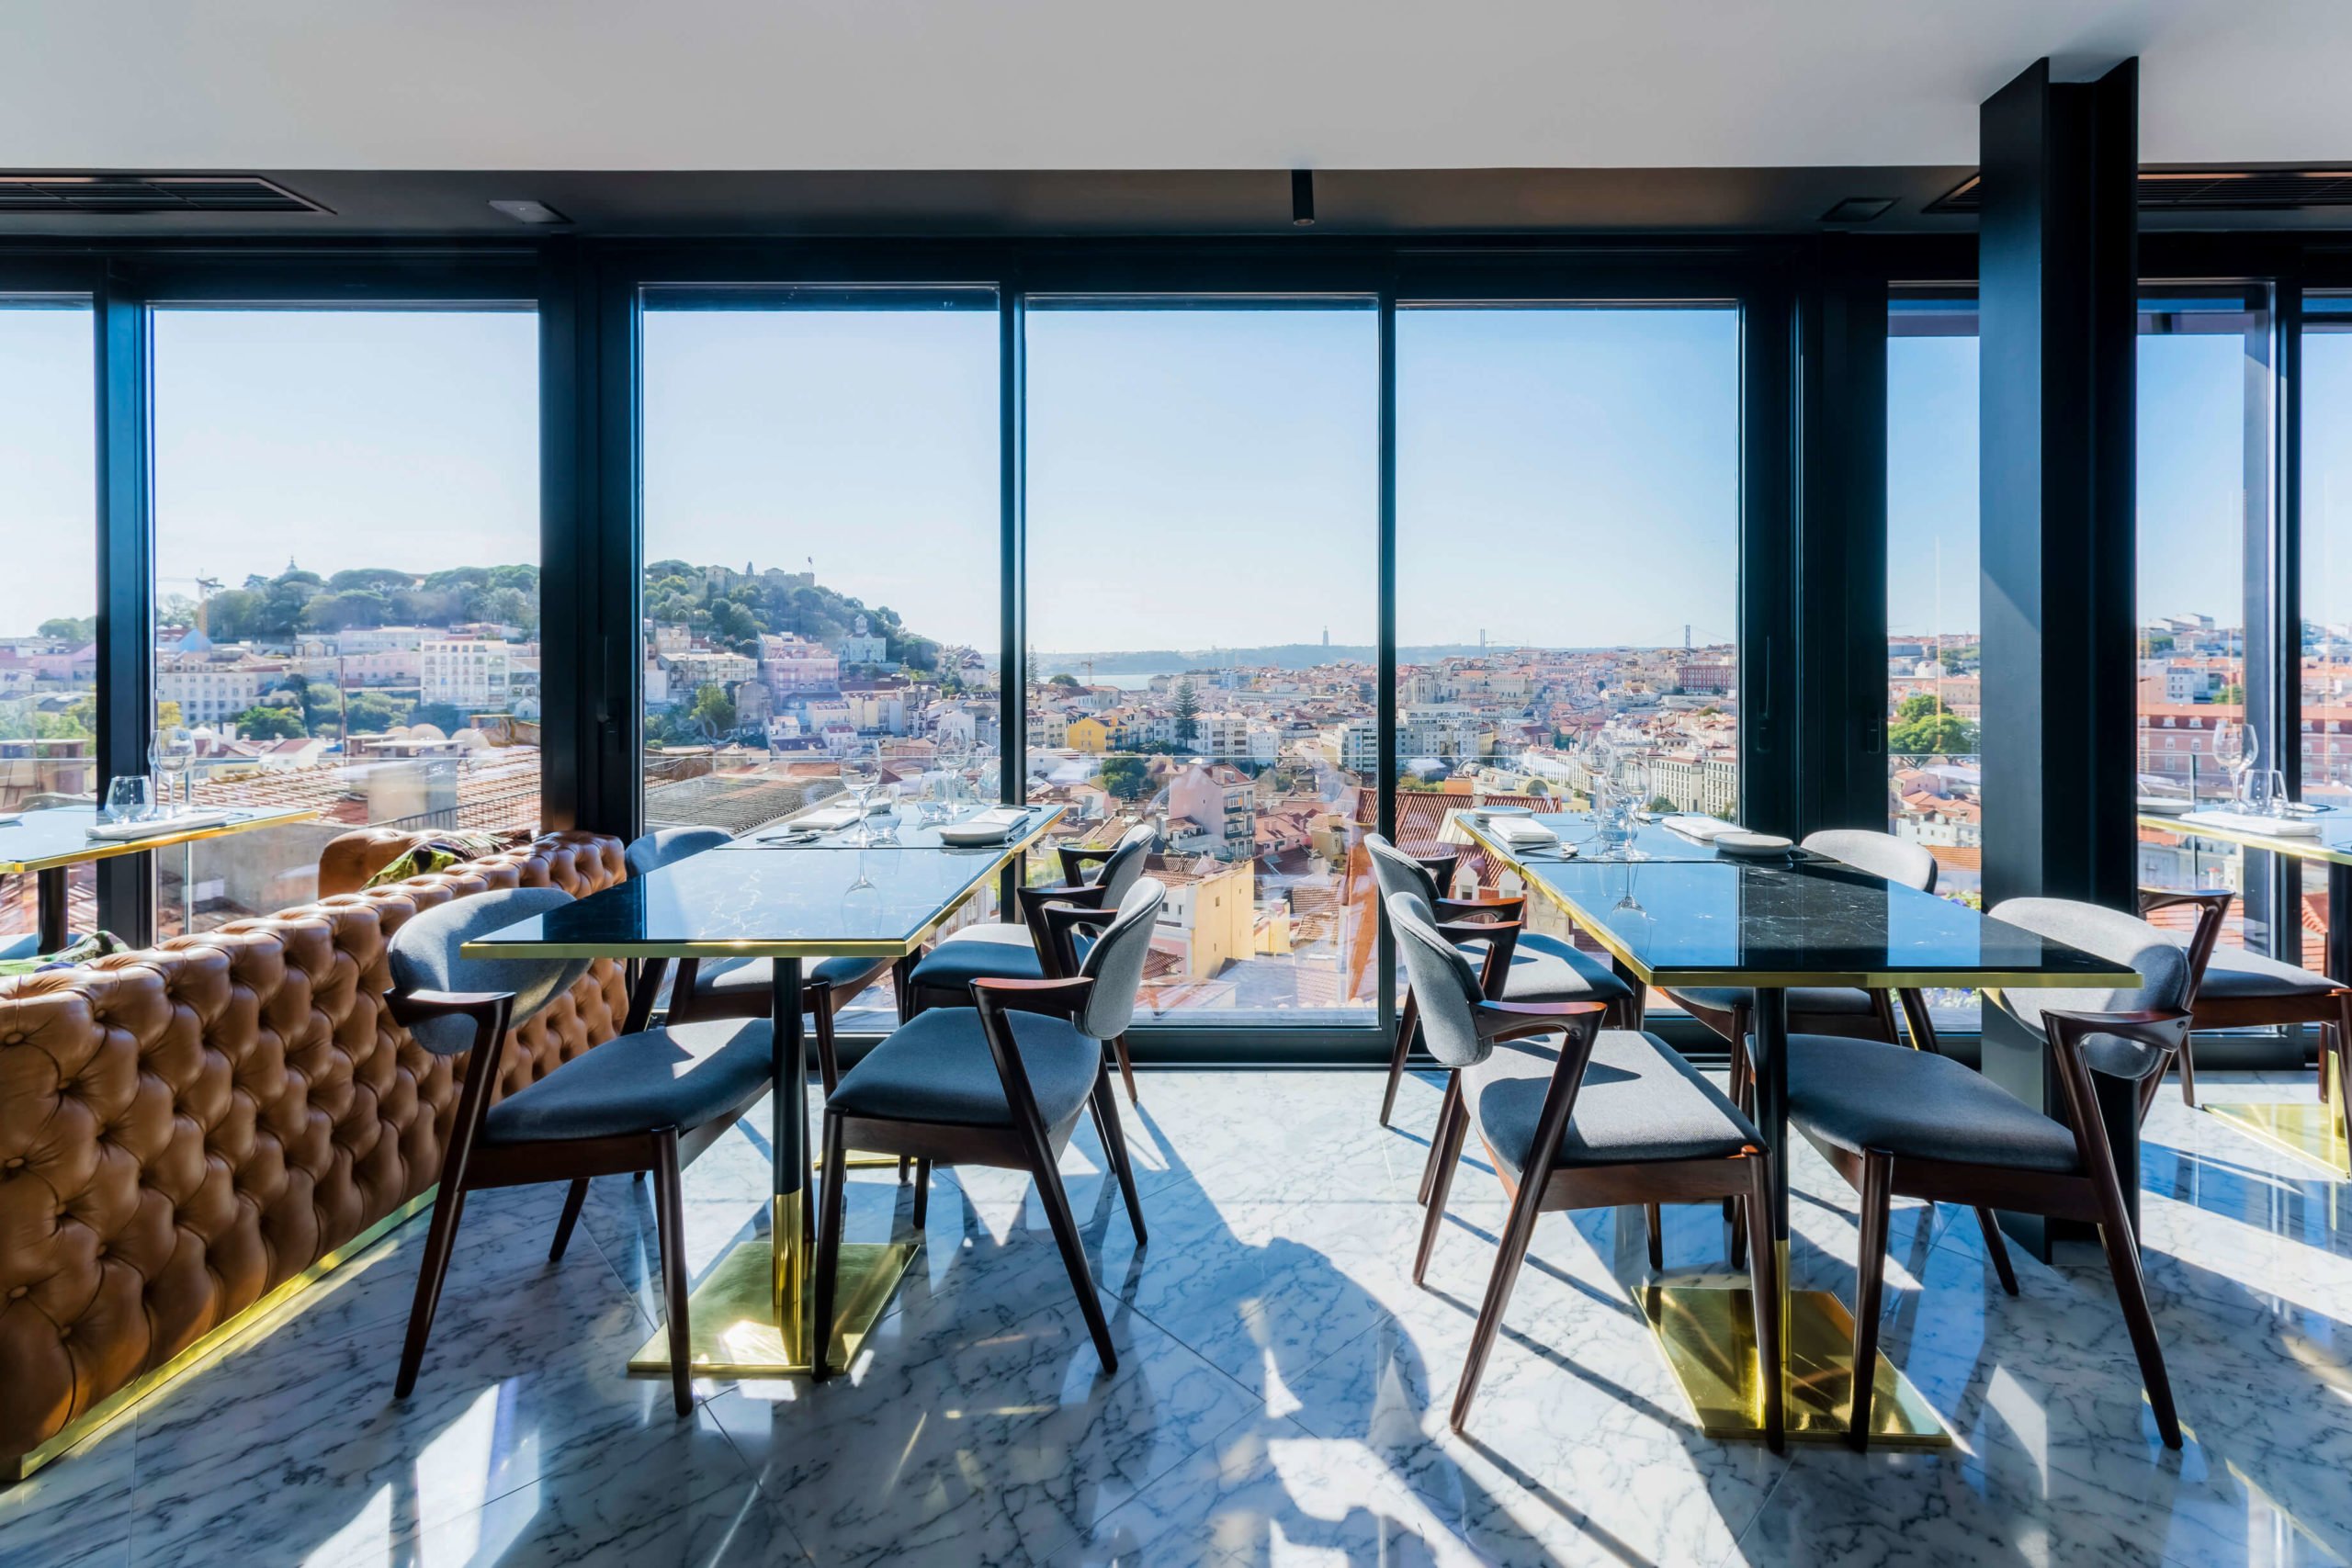 Sala principal do restaurante, com magnificas janelas com vista para a cidade de Lisboa.